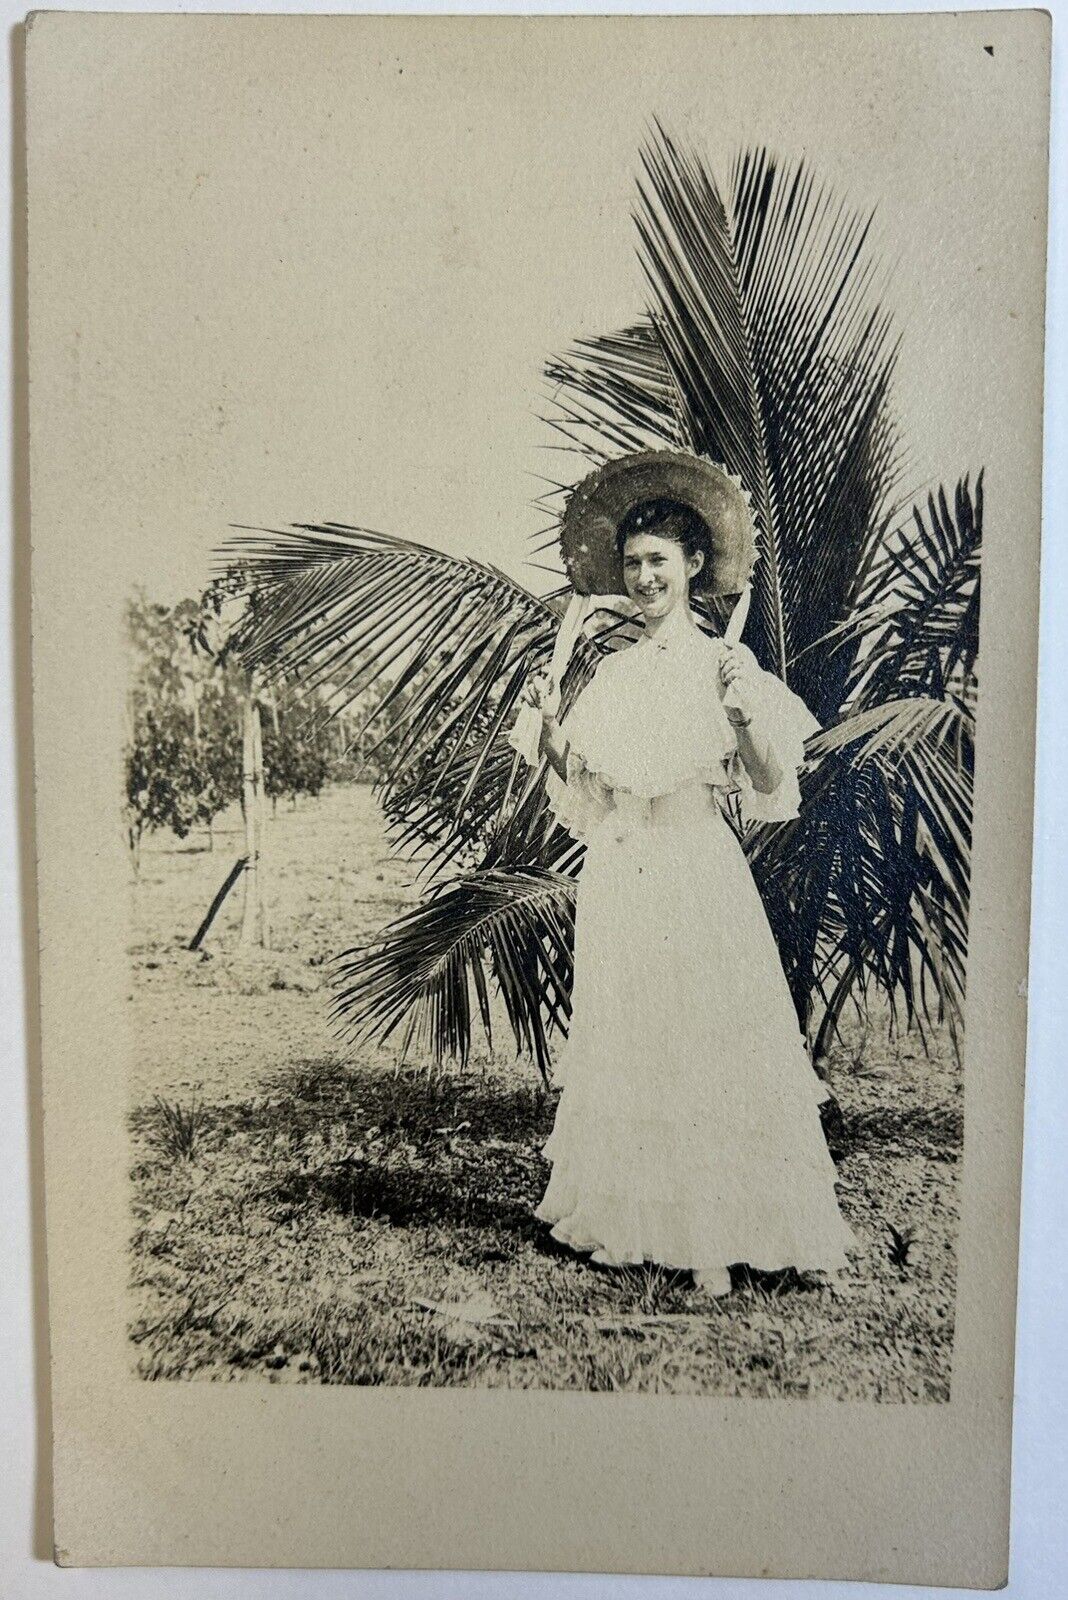 Antique Black & White Portrait Postcard, Woman by Plant, Unposted Card